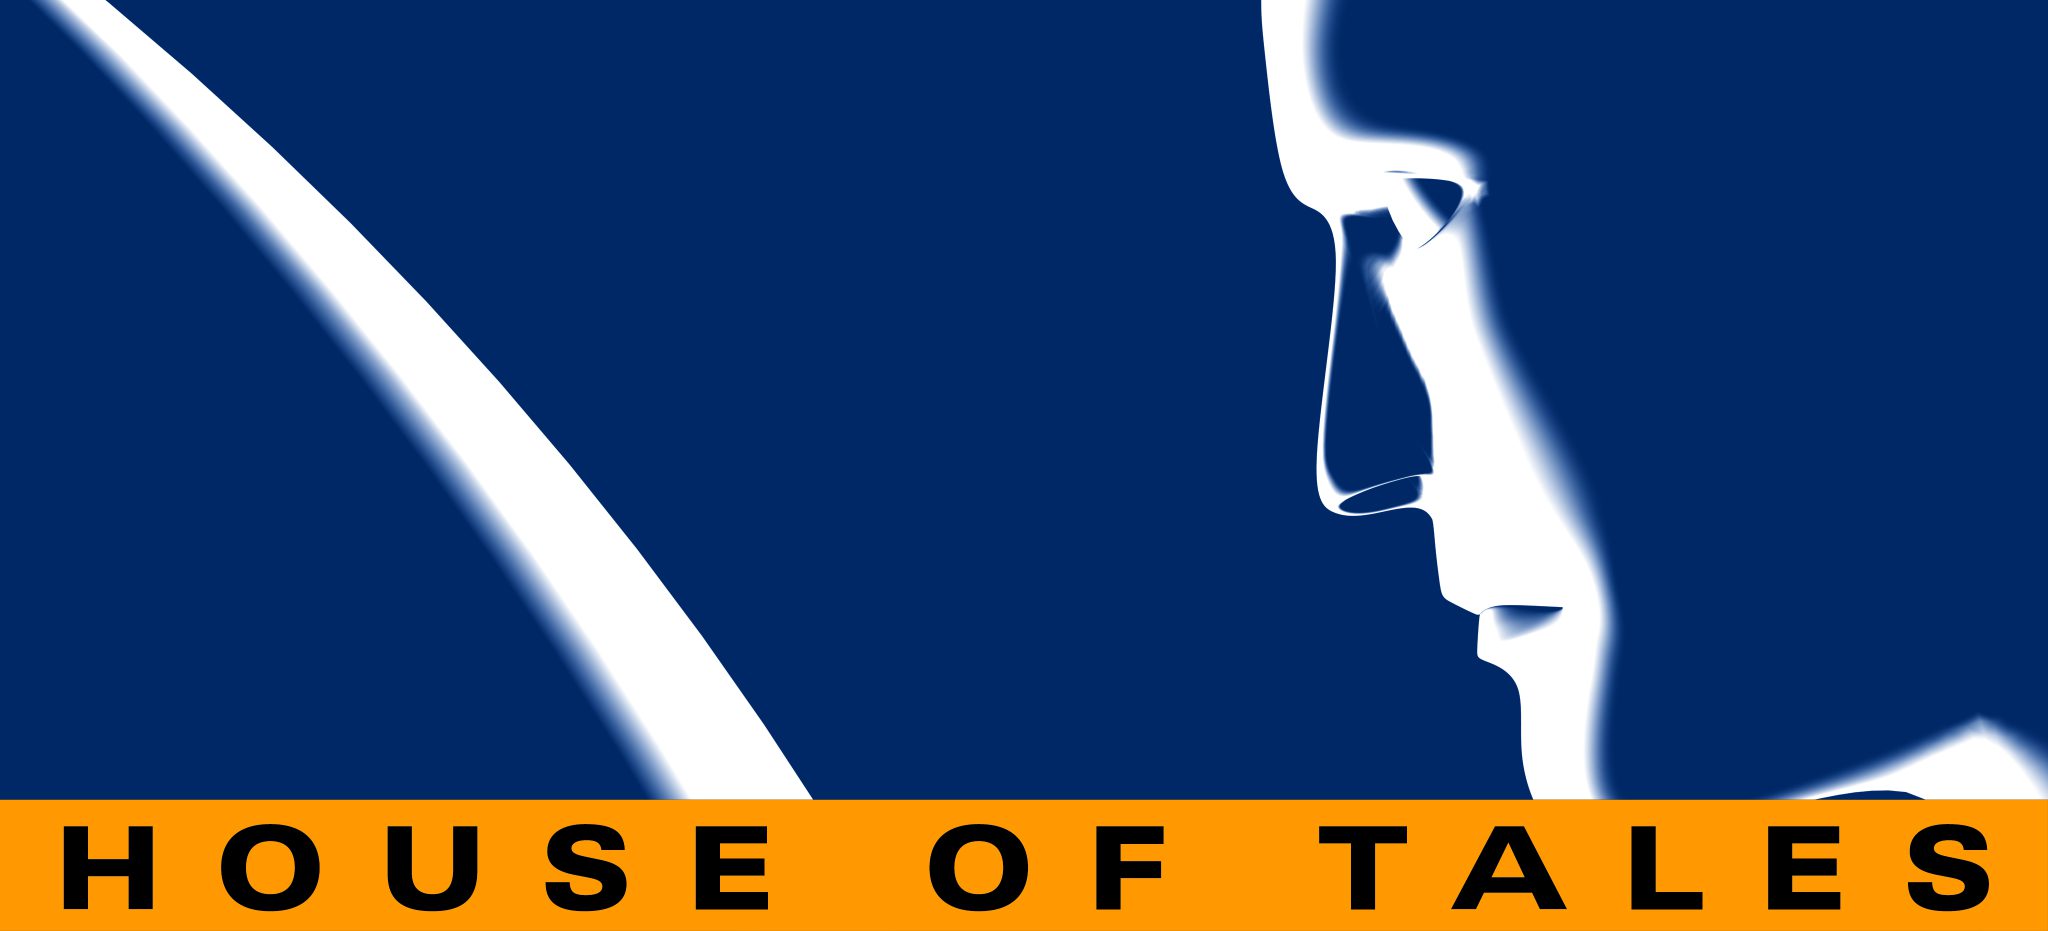 House of Tales: Een overzicht van het bedrijf